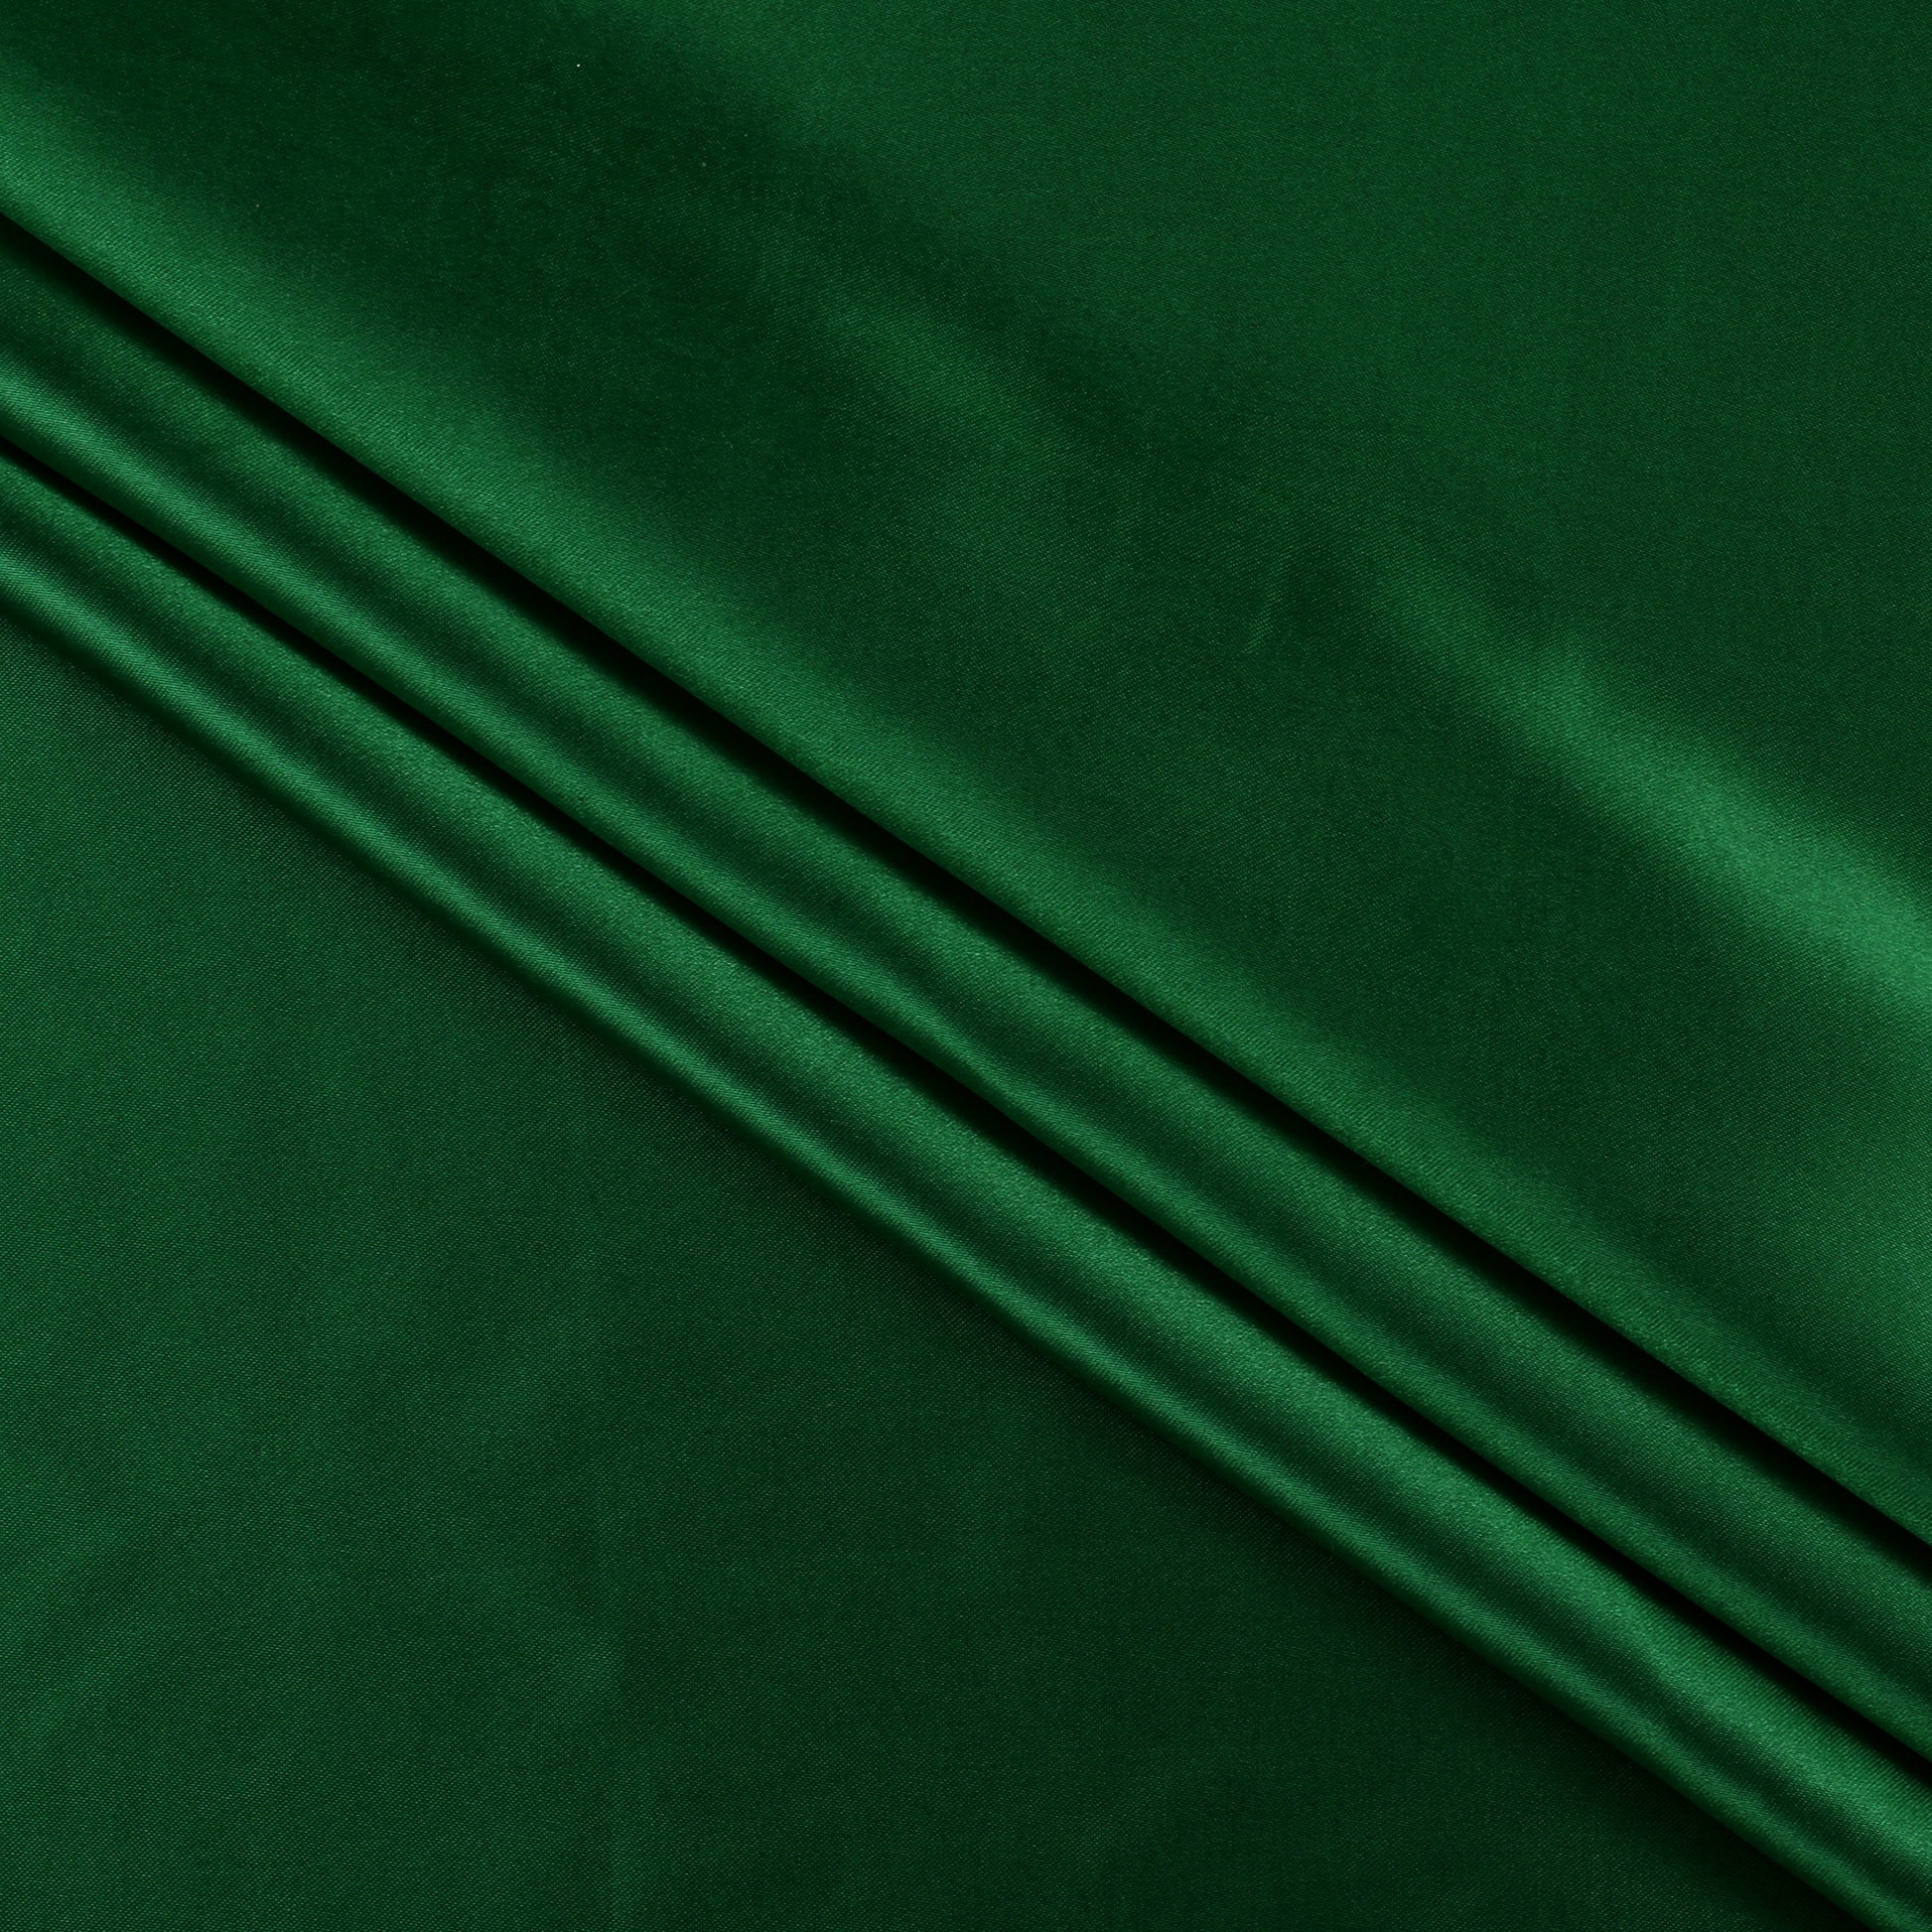 Green,98c4f714-9da0-47d4-9be5-ec4ce0ca111b